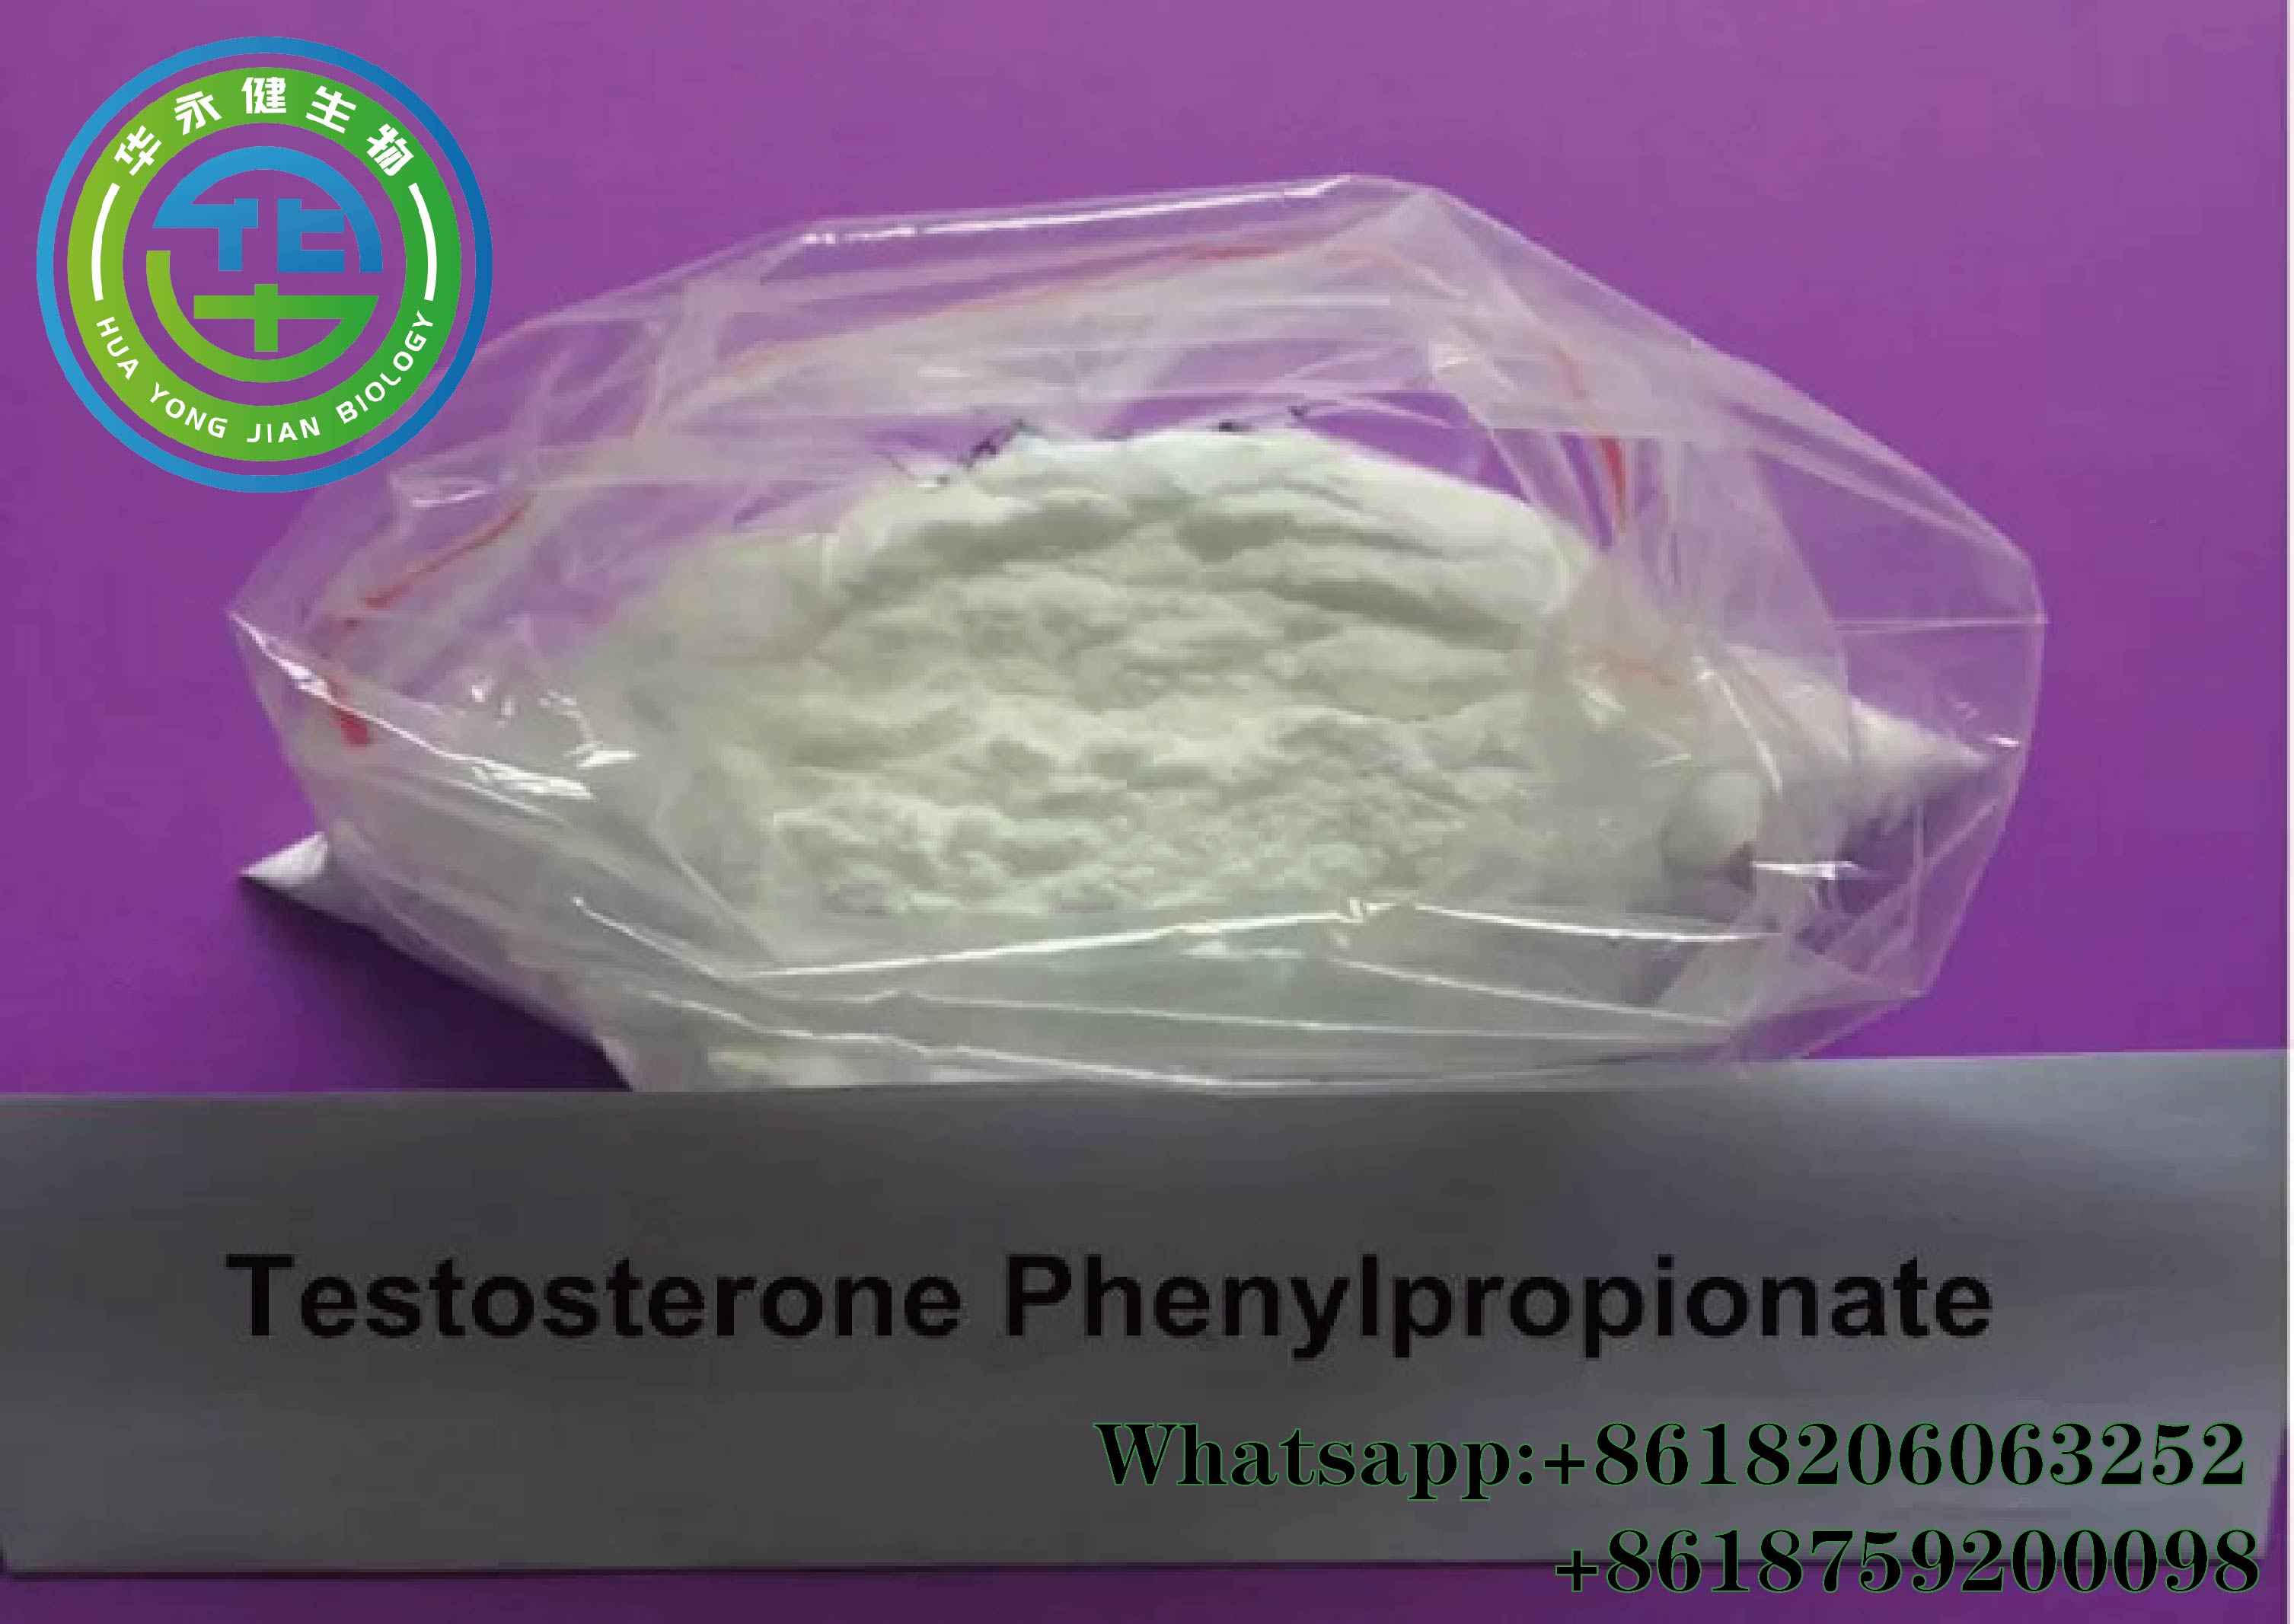 Testosterone Phenylpropionate12